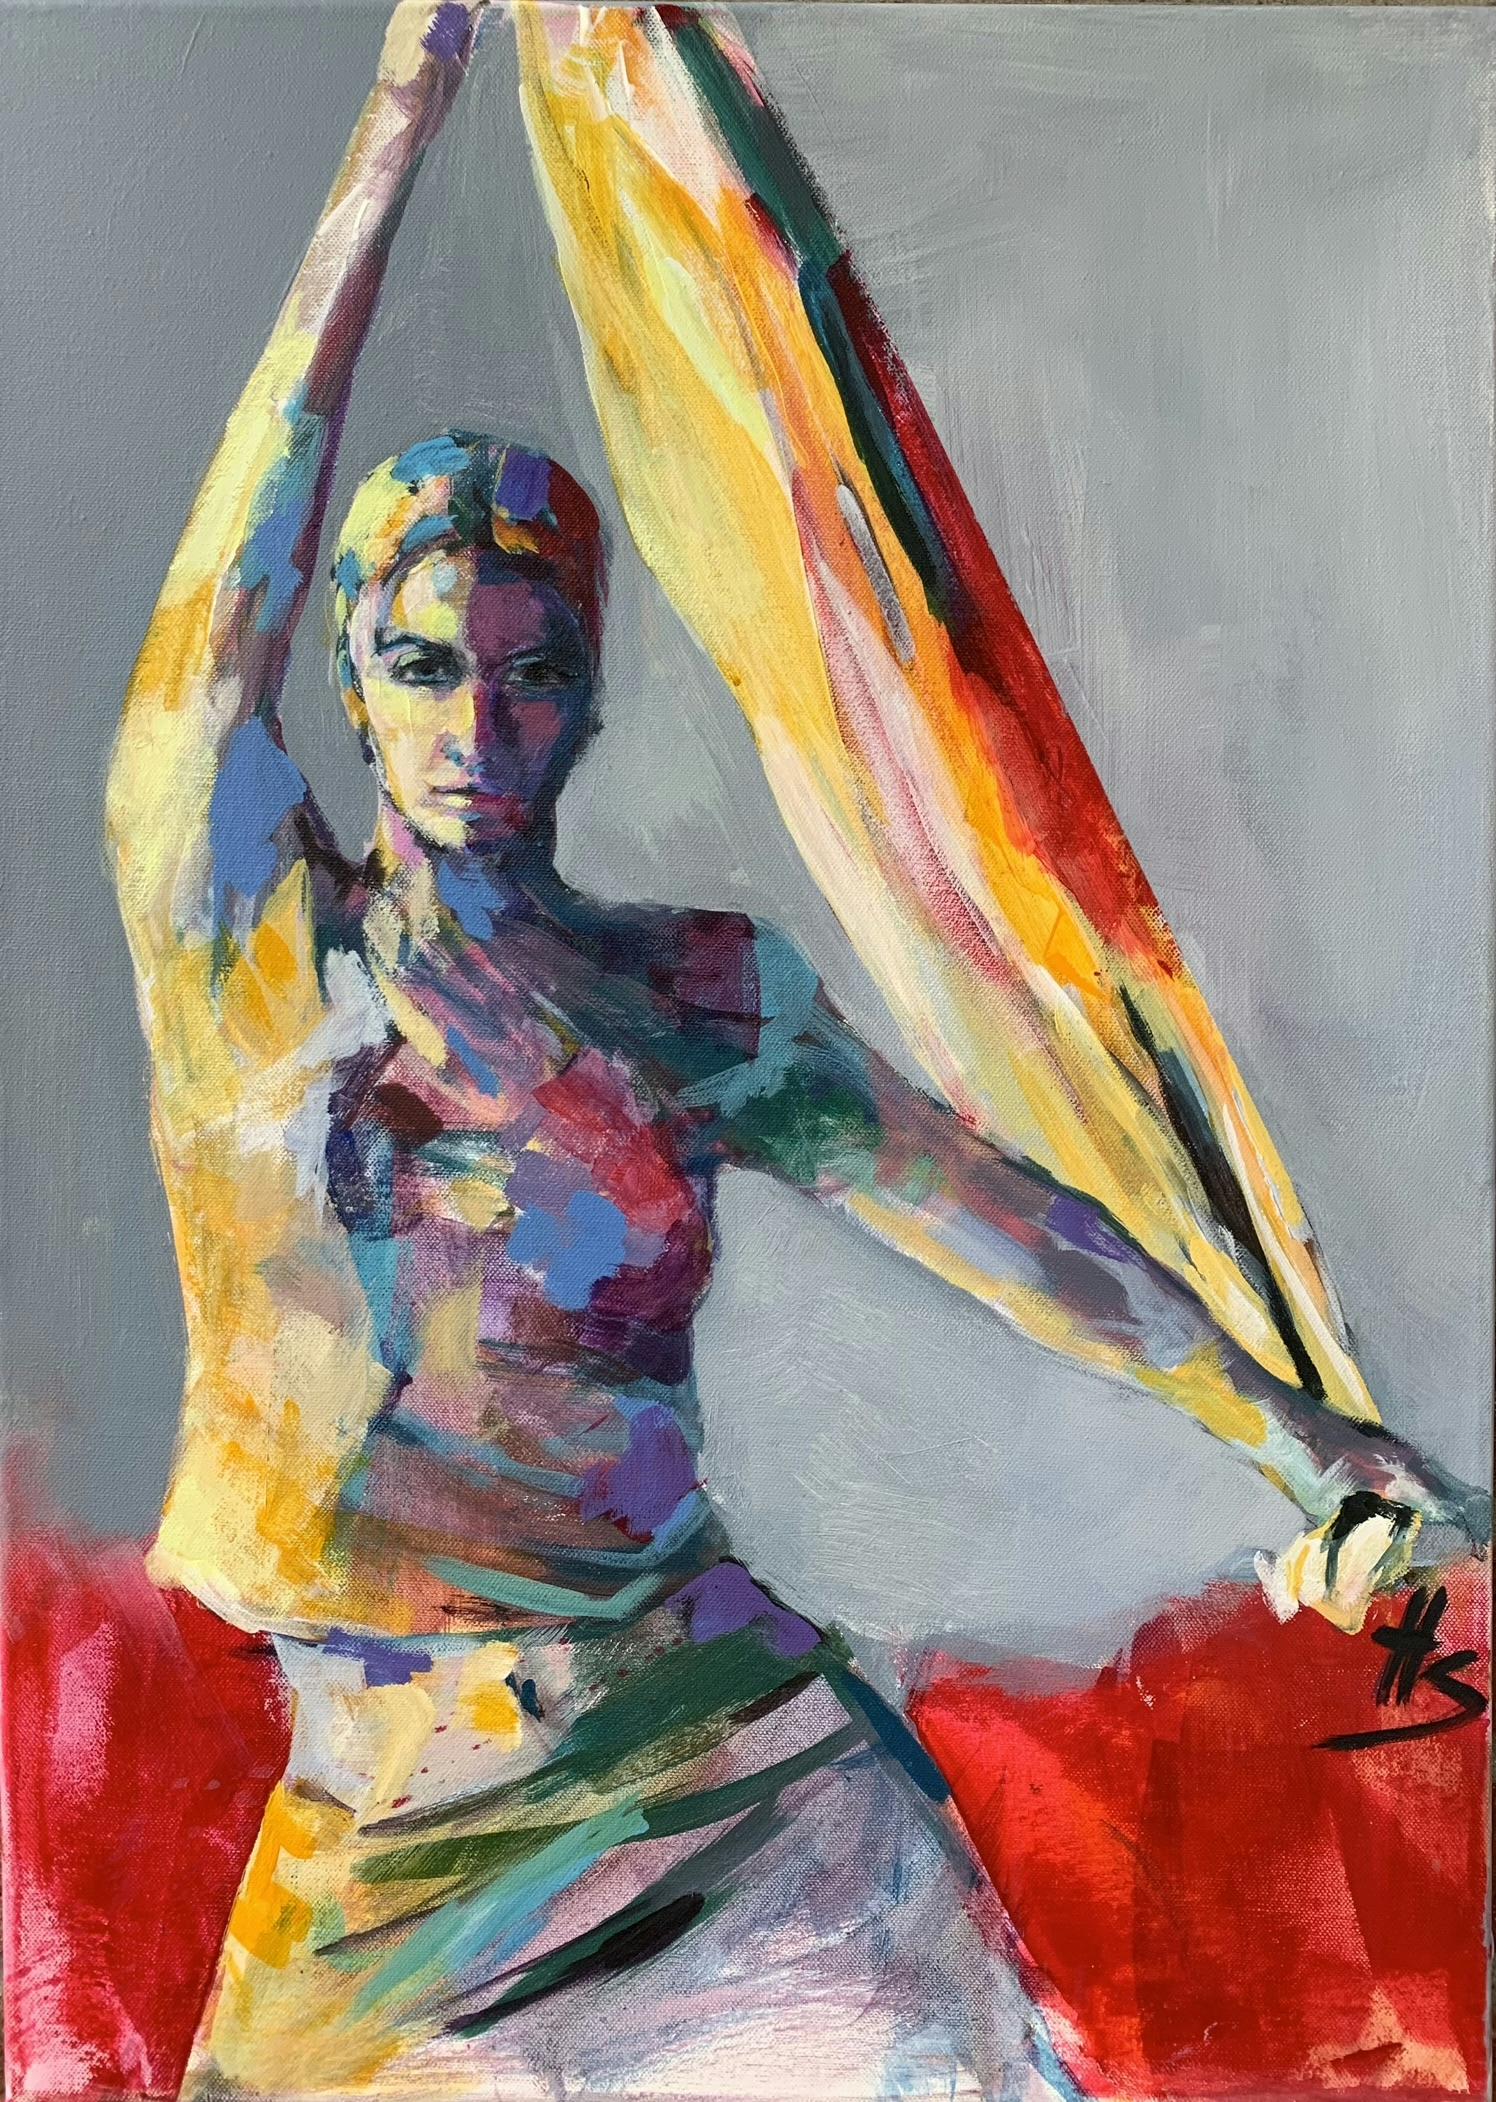 Artwork by Heike Schümann depicts a standing woman